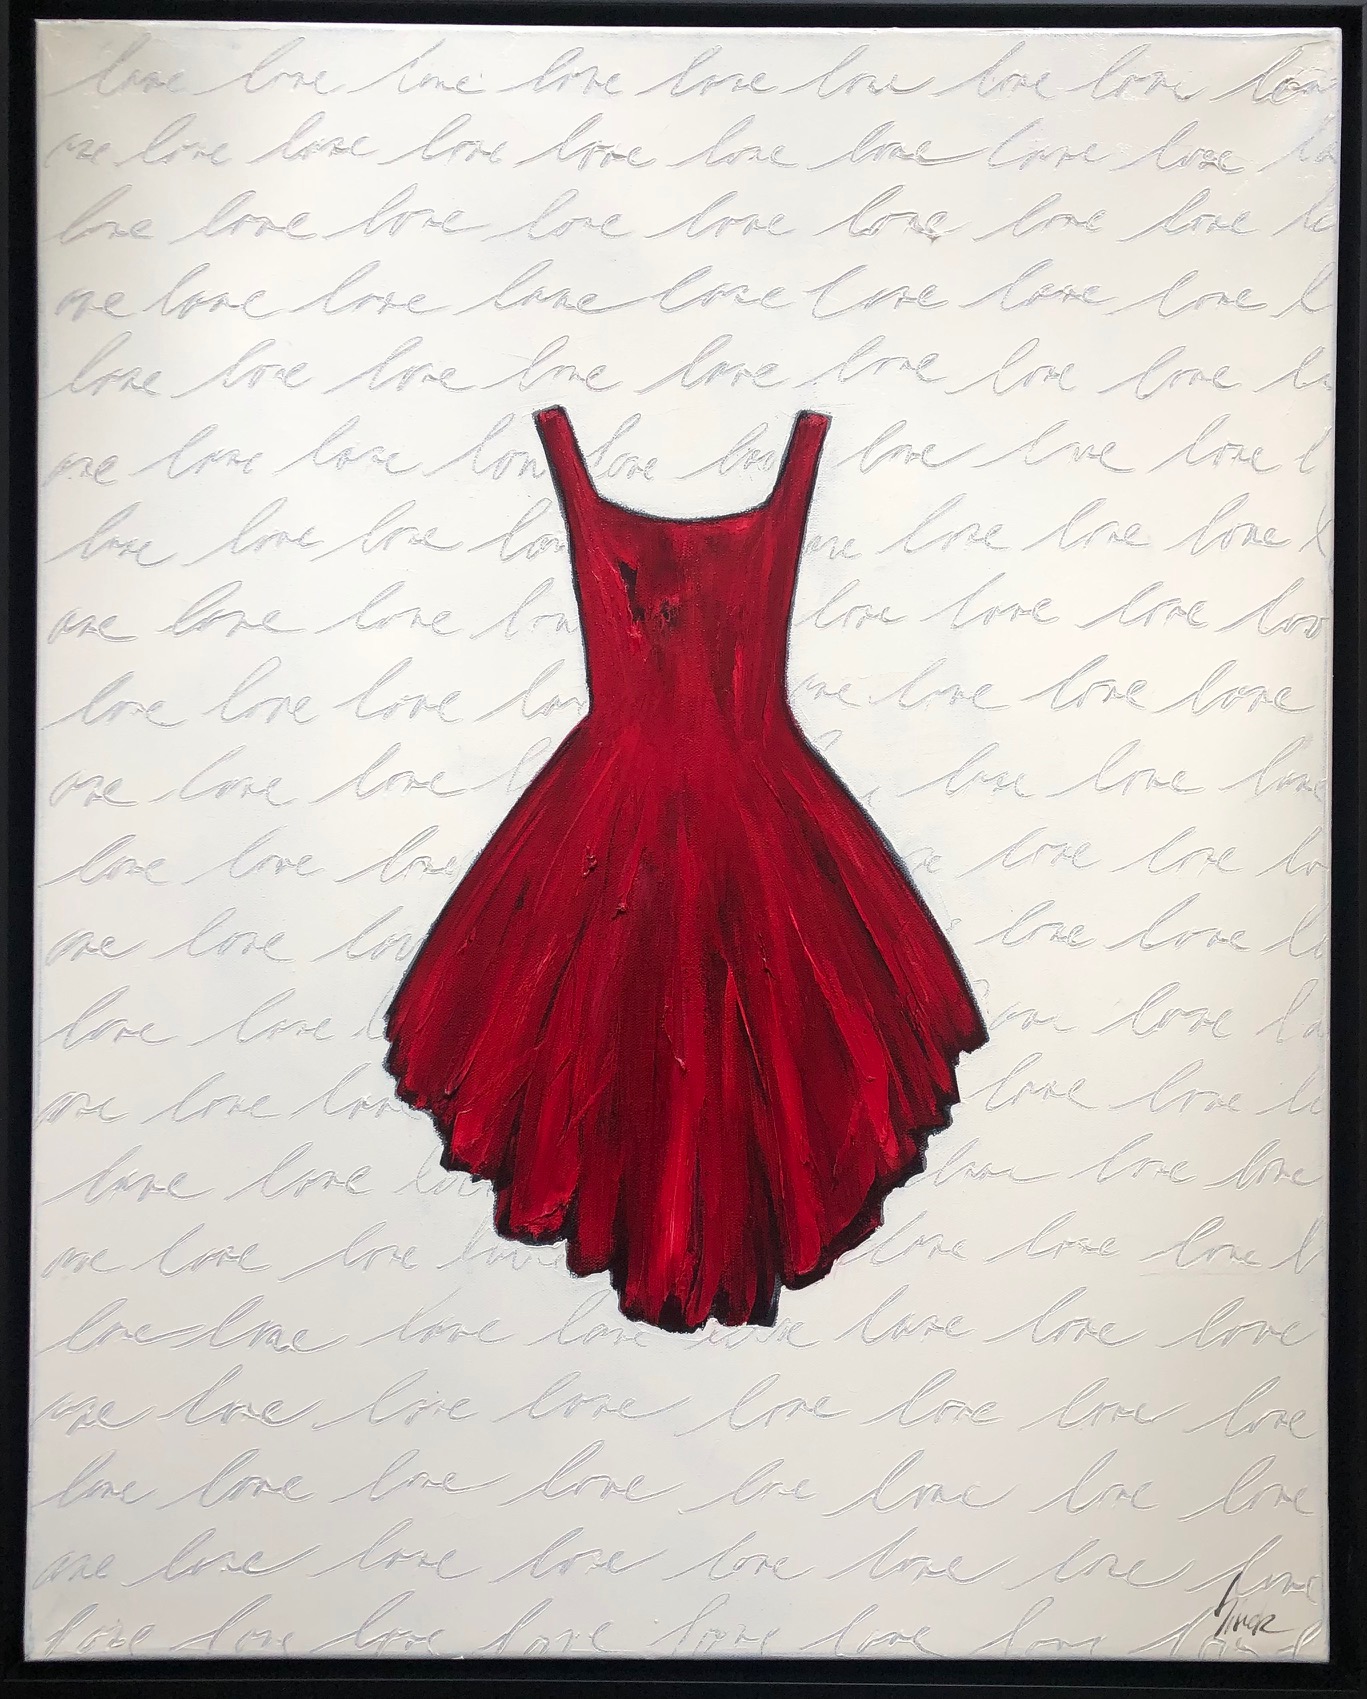 Little Red Dress Love